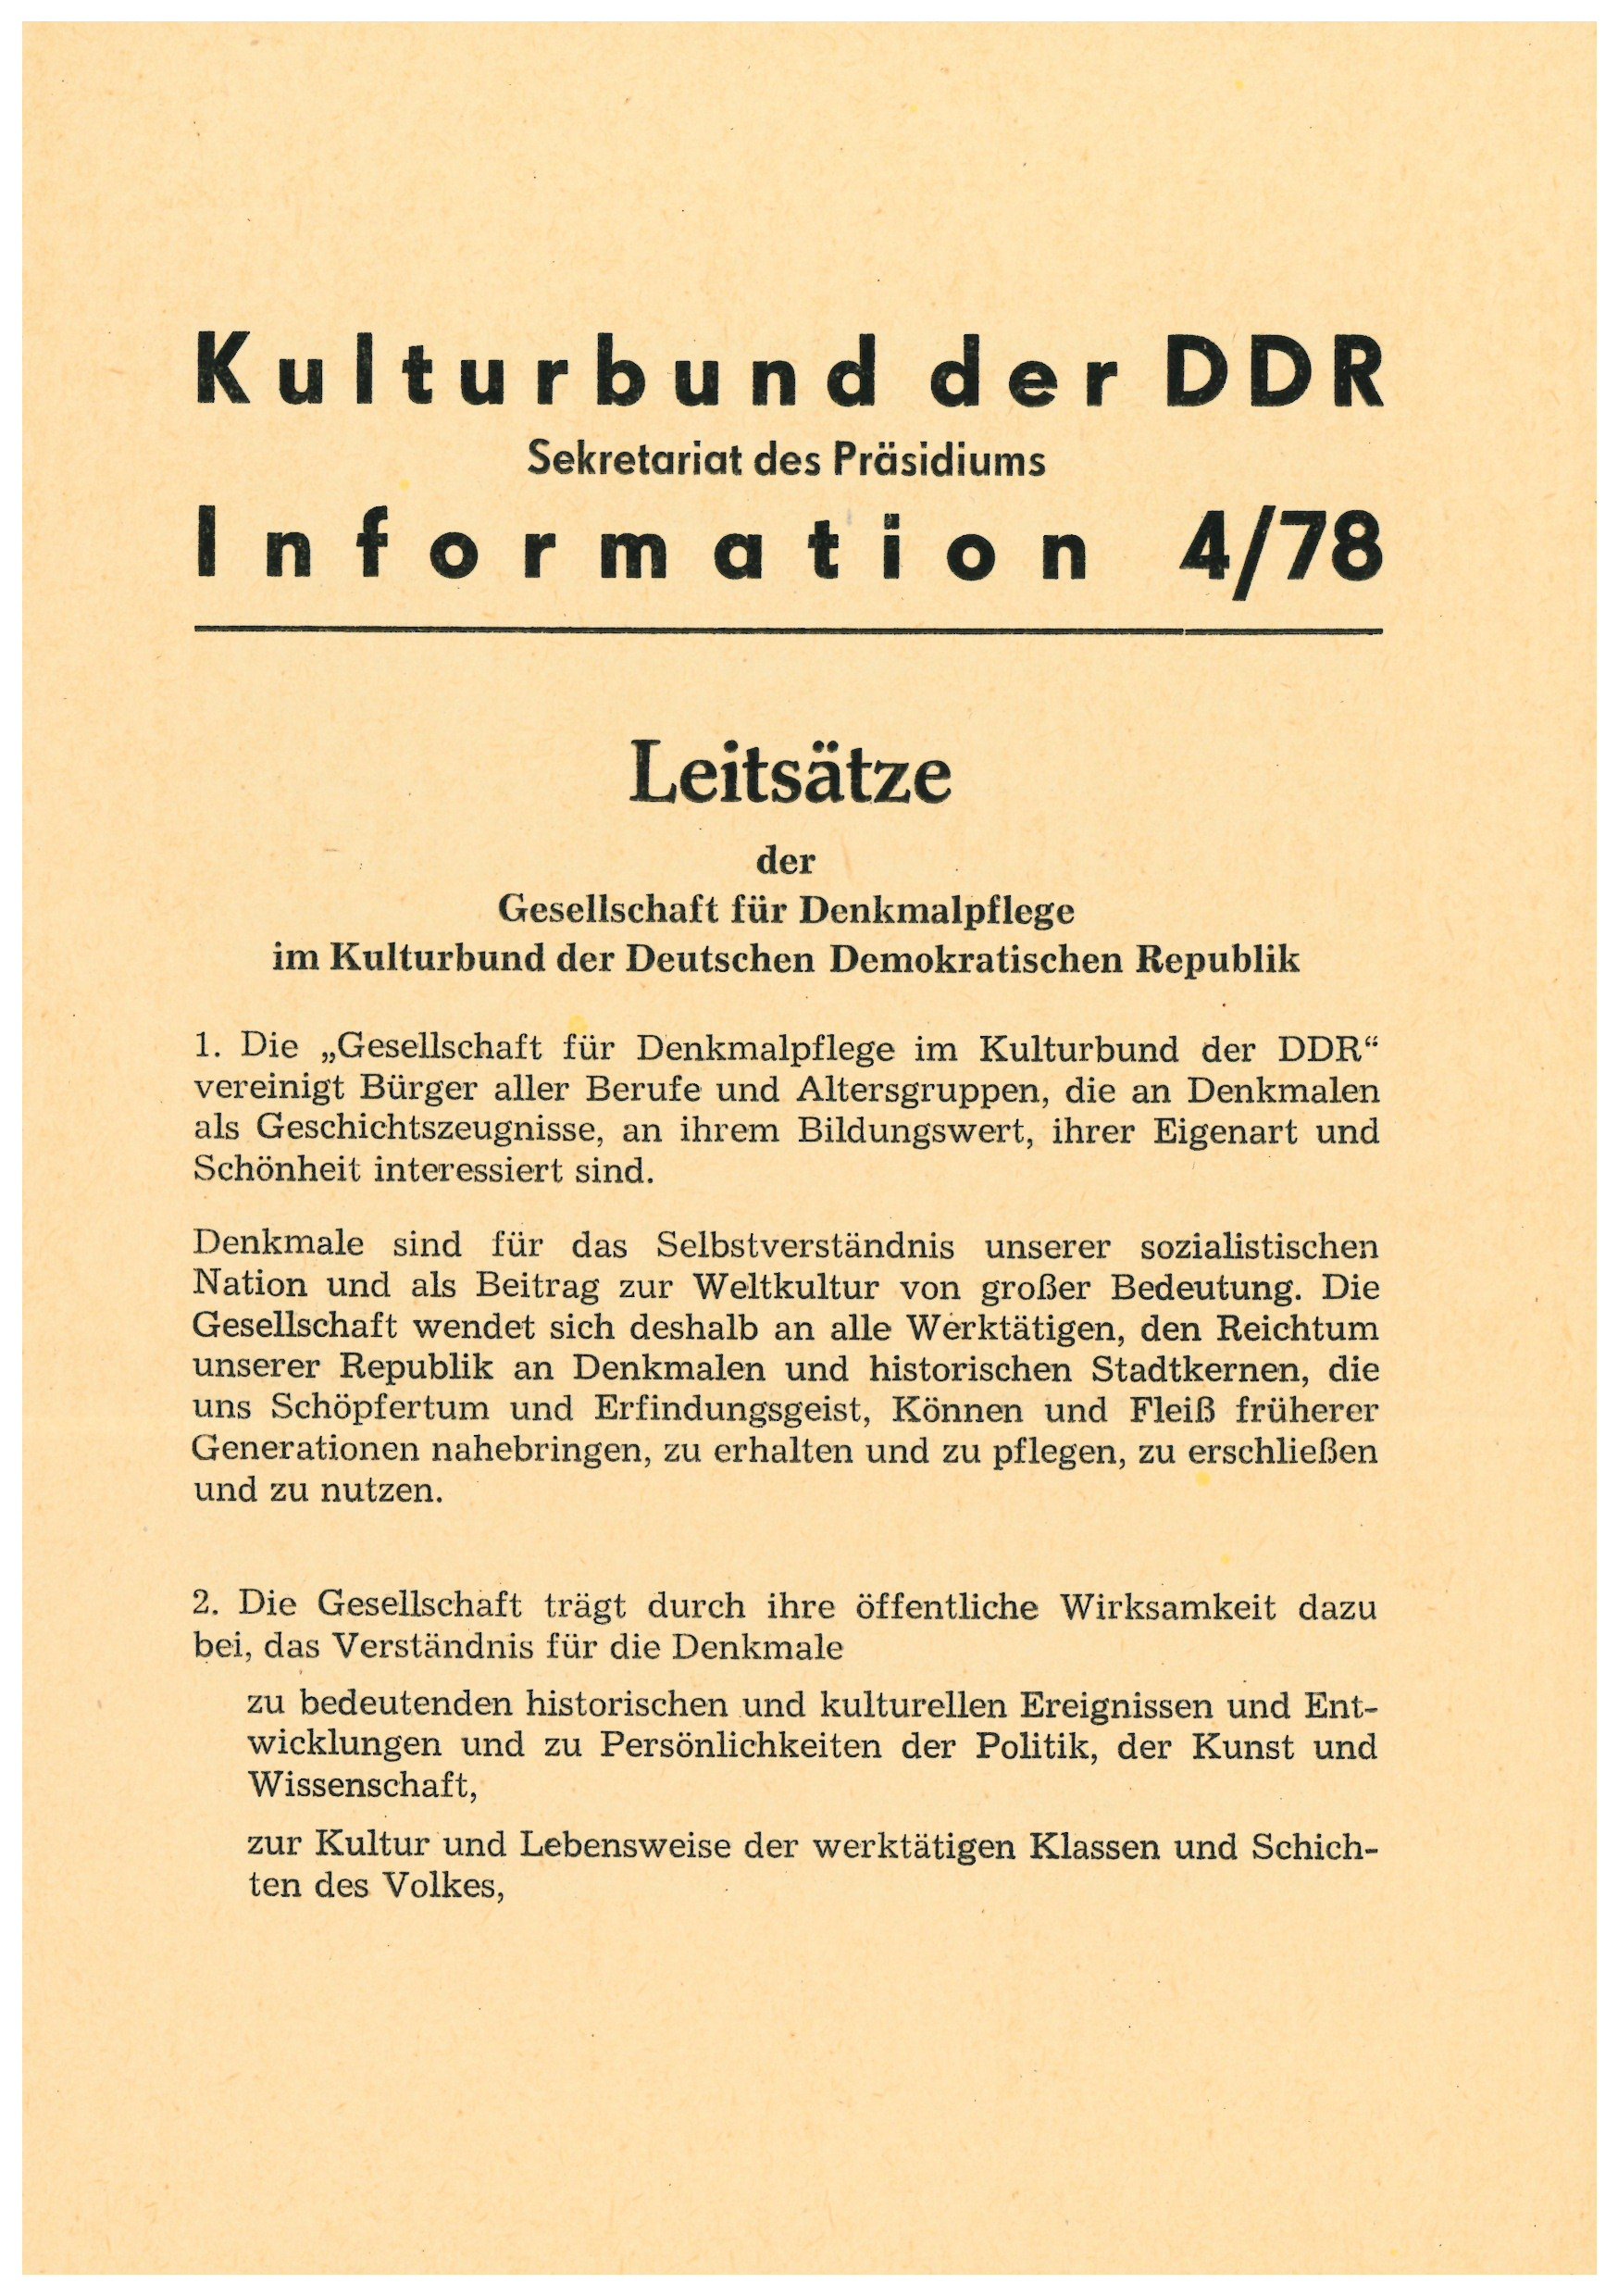 Information 4/78 Kulturbund der DDR (Historische Mühle von Sanssouci CC BY-NC-SA)